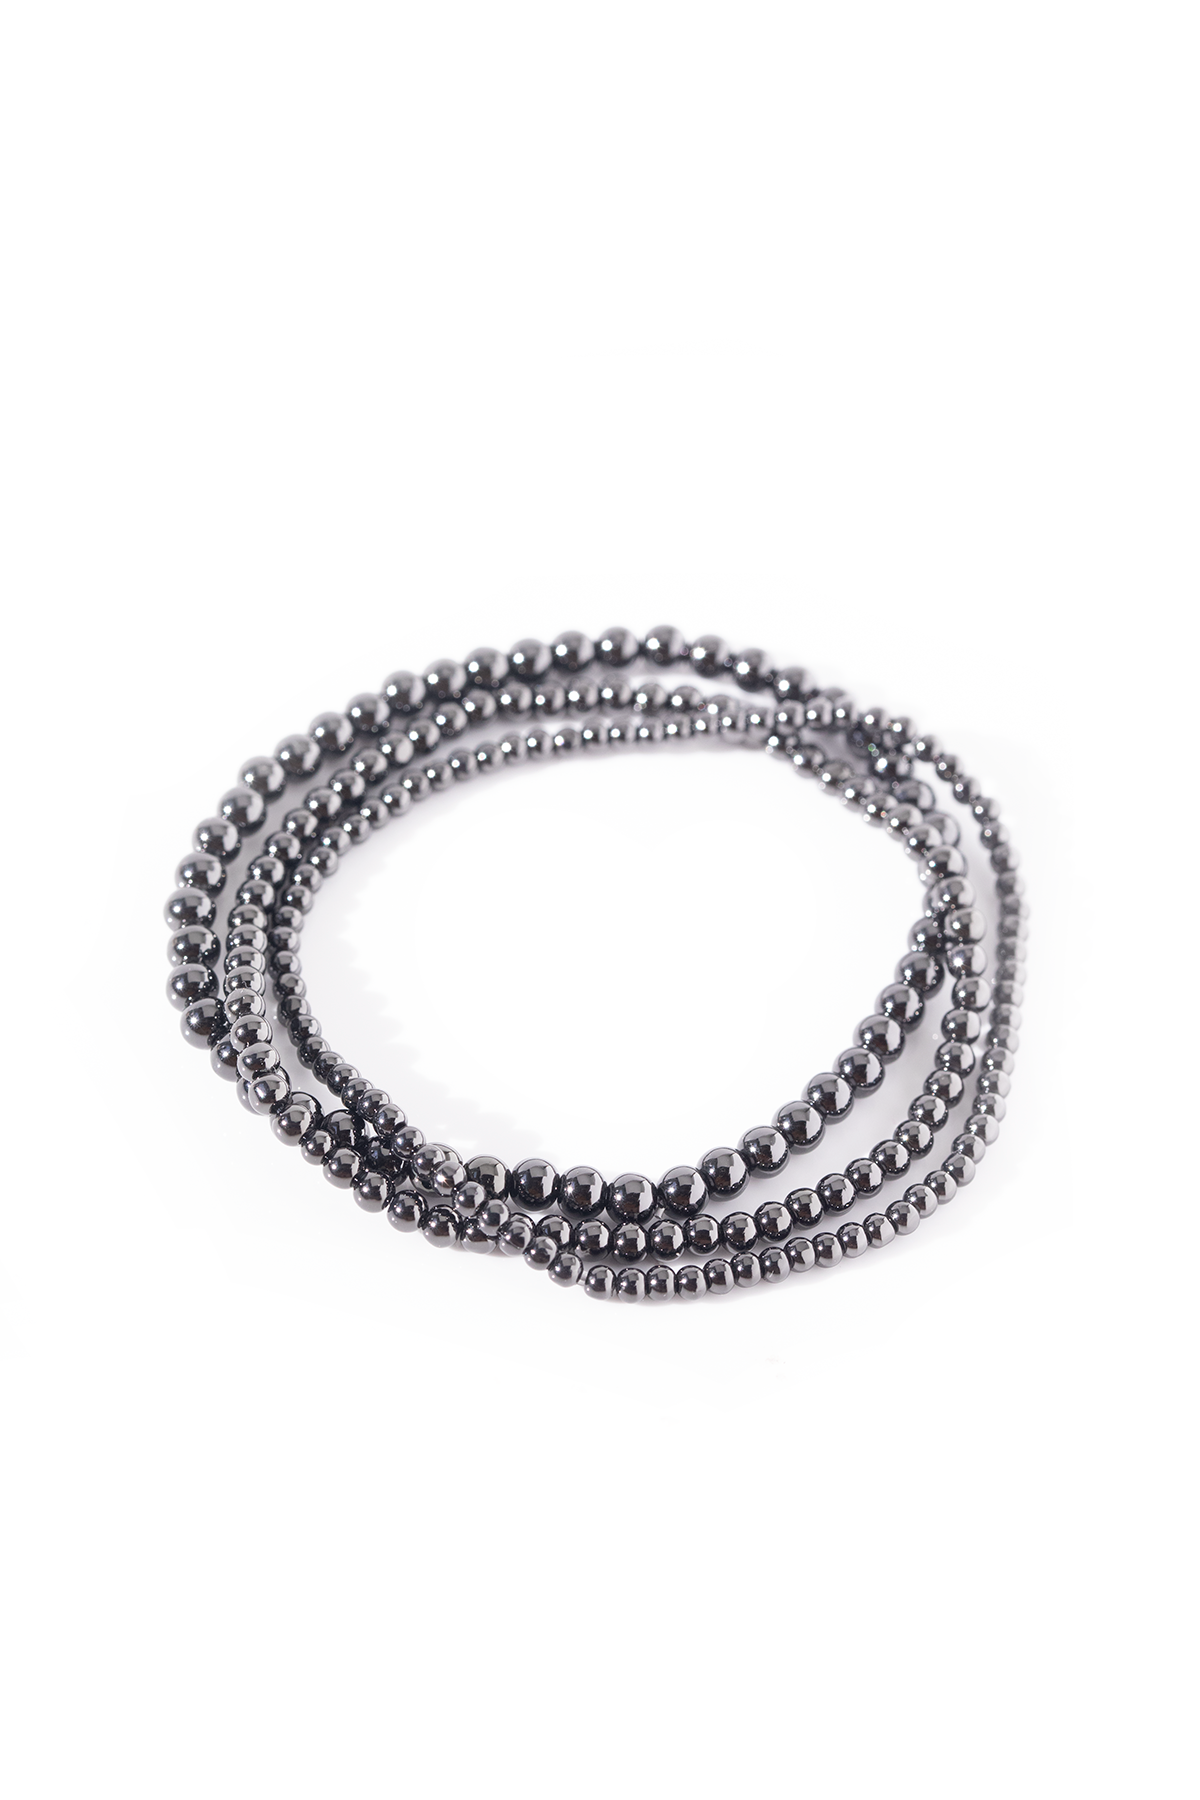 Caviar | Bead Bracelet Set